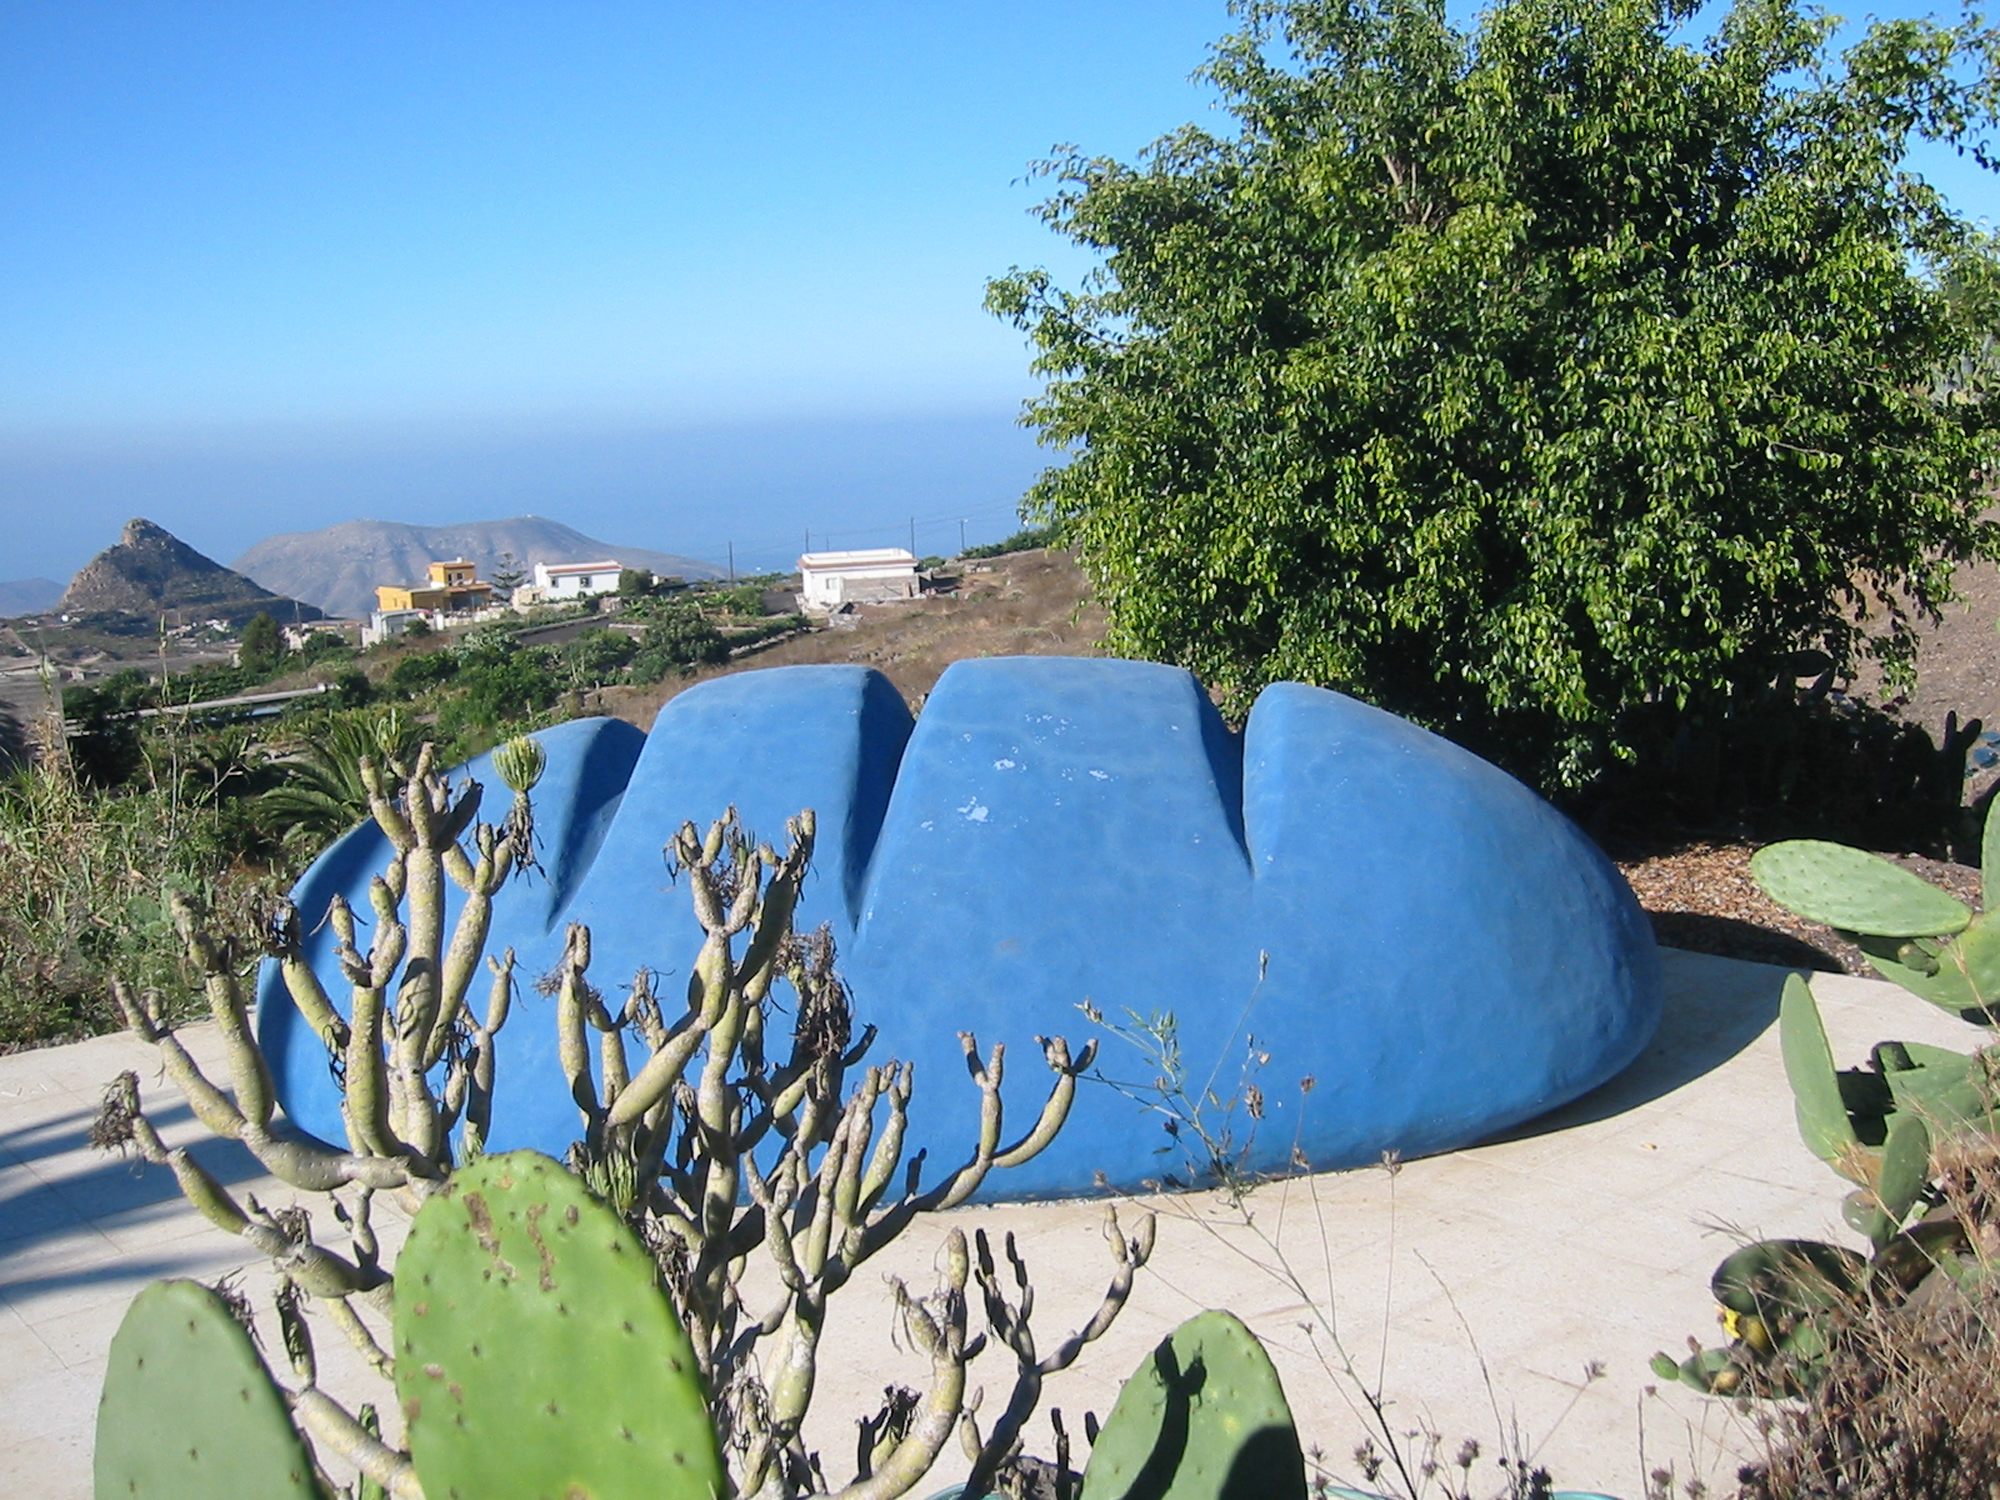 Ein blaues Brot von Thomas Kahl in Mariposa, Teneriffa. Foto: Raimund Kast